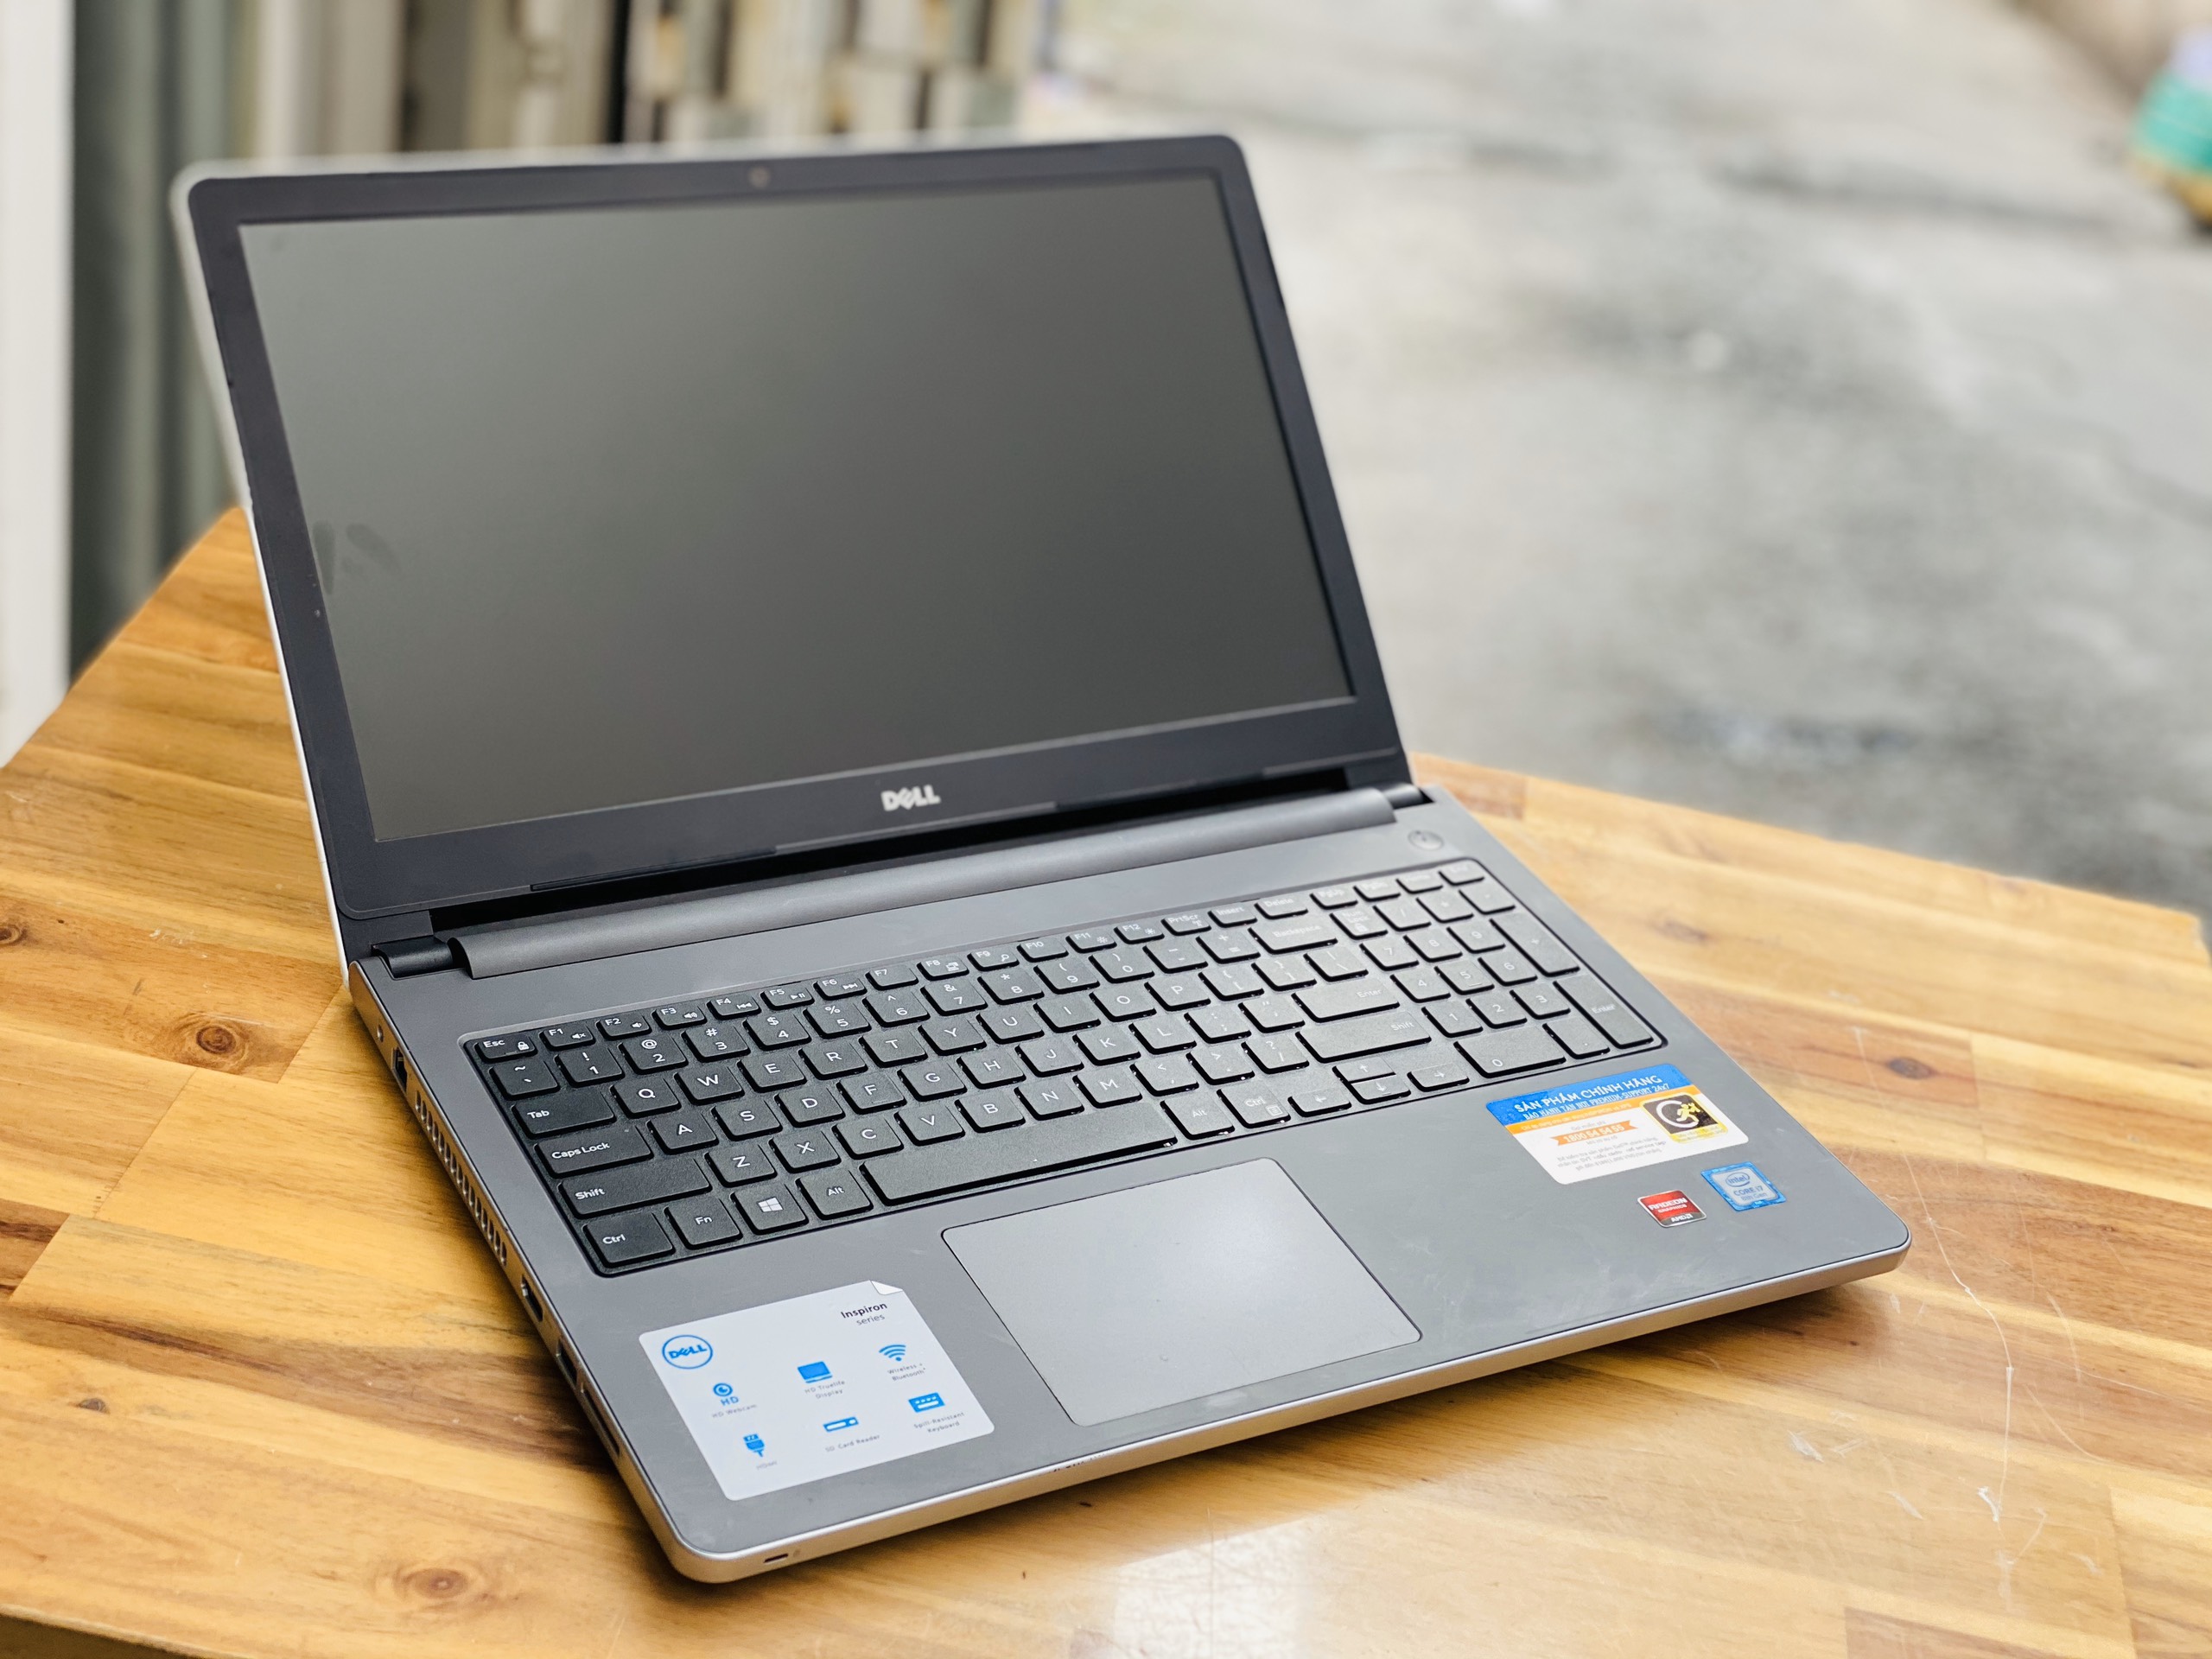 Laptop Dell Inspiron 5559, i7 6500U 8G SSD128+500G Vga rời 4G Đèn phím Đẹp zin 100% Giá rẻ3